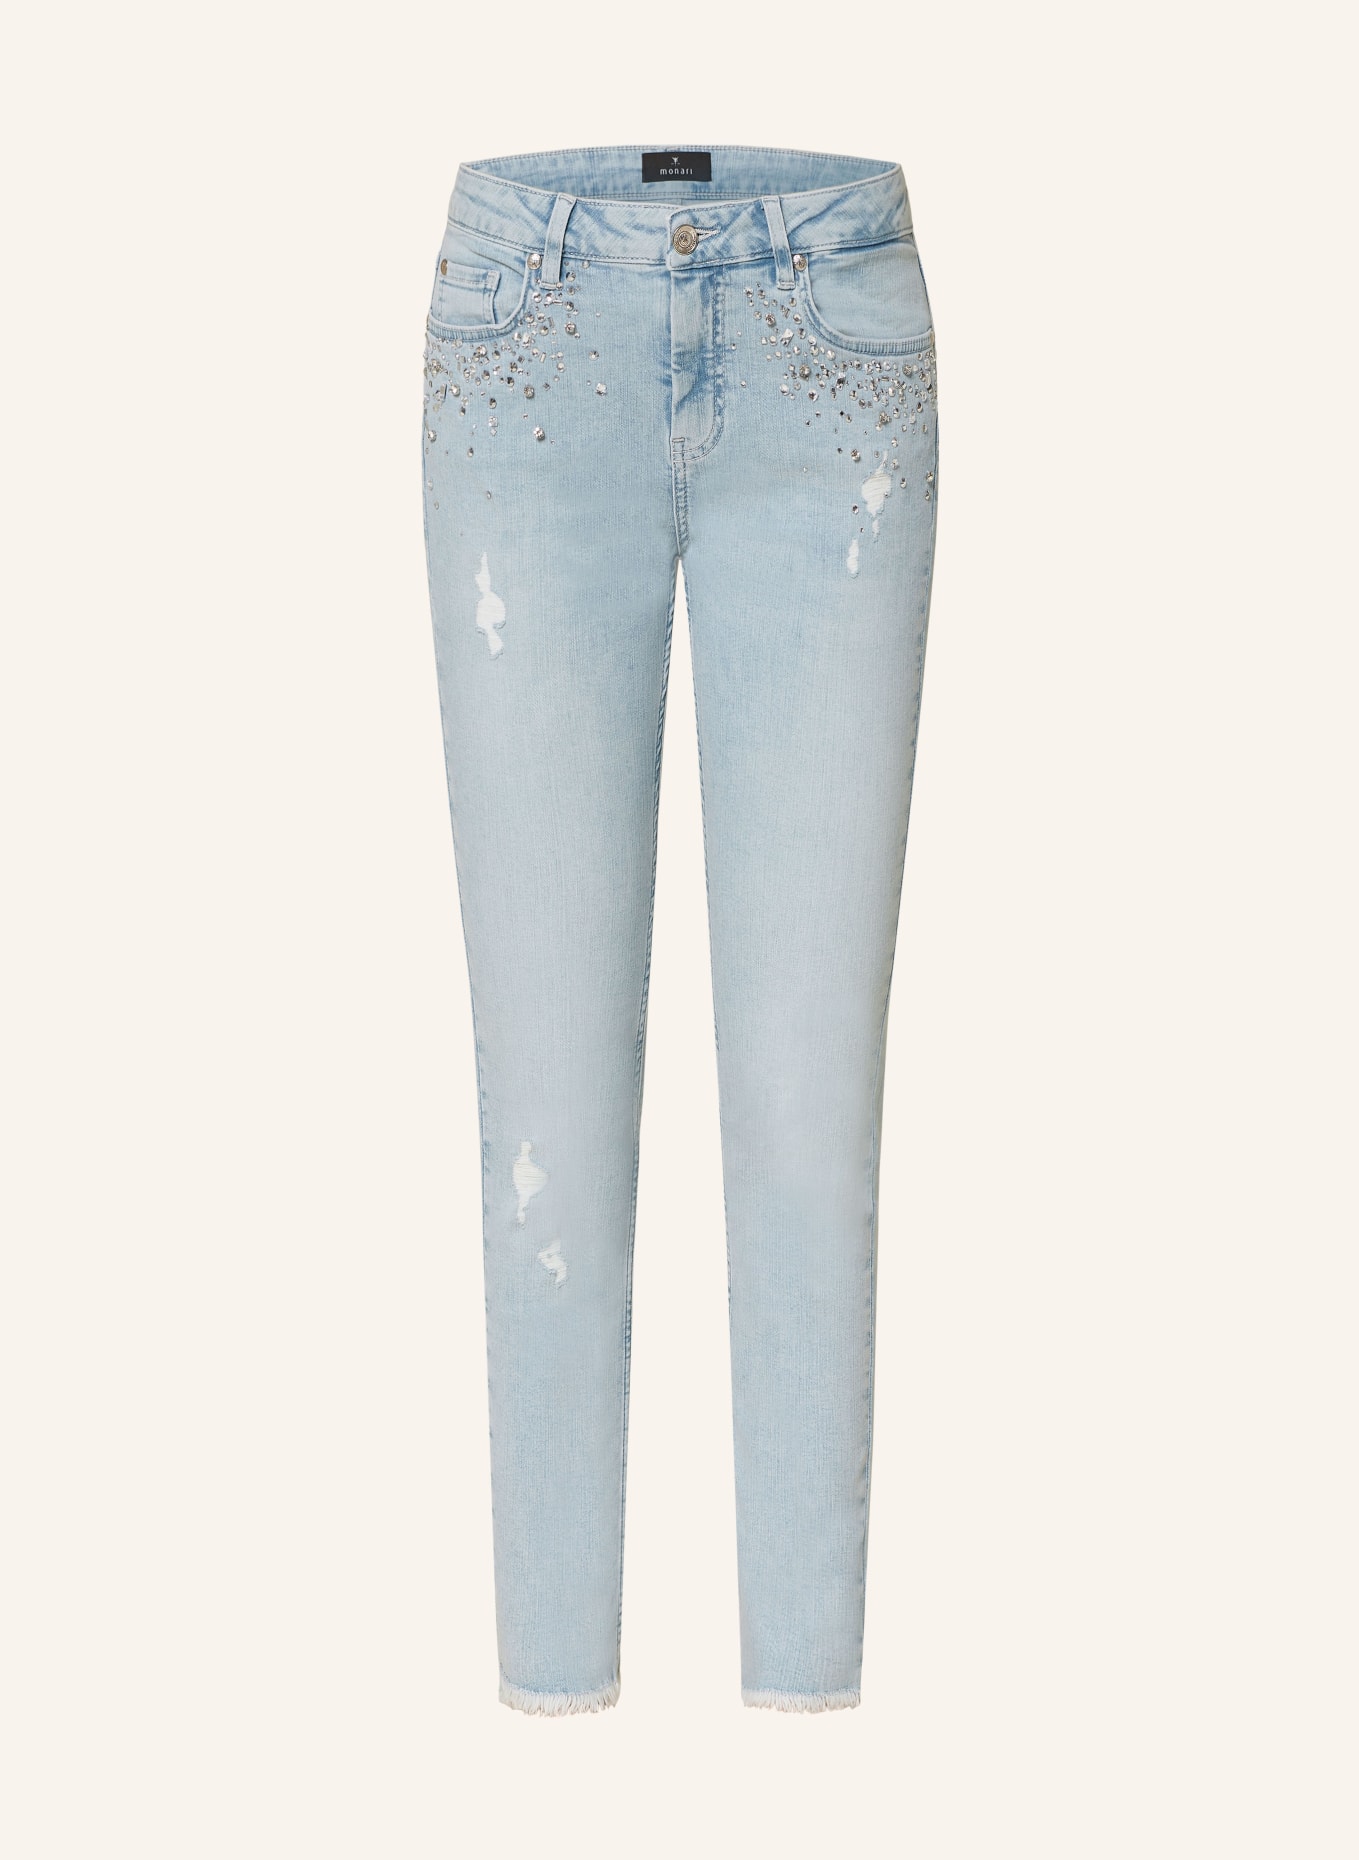 monari Skinny Jeans mit Schmucksteinen, Farbe: 750 jeans (Bild 1)